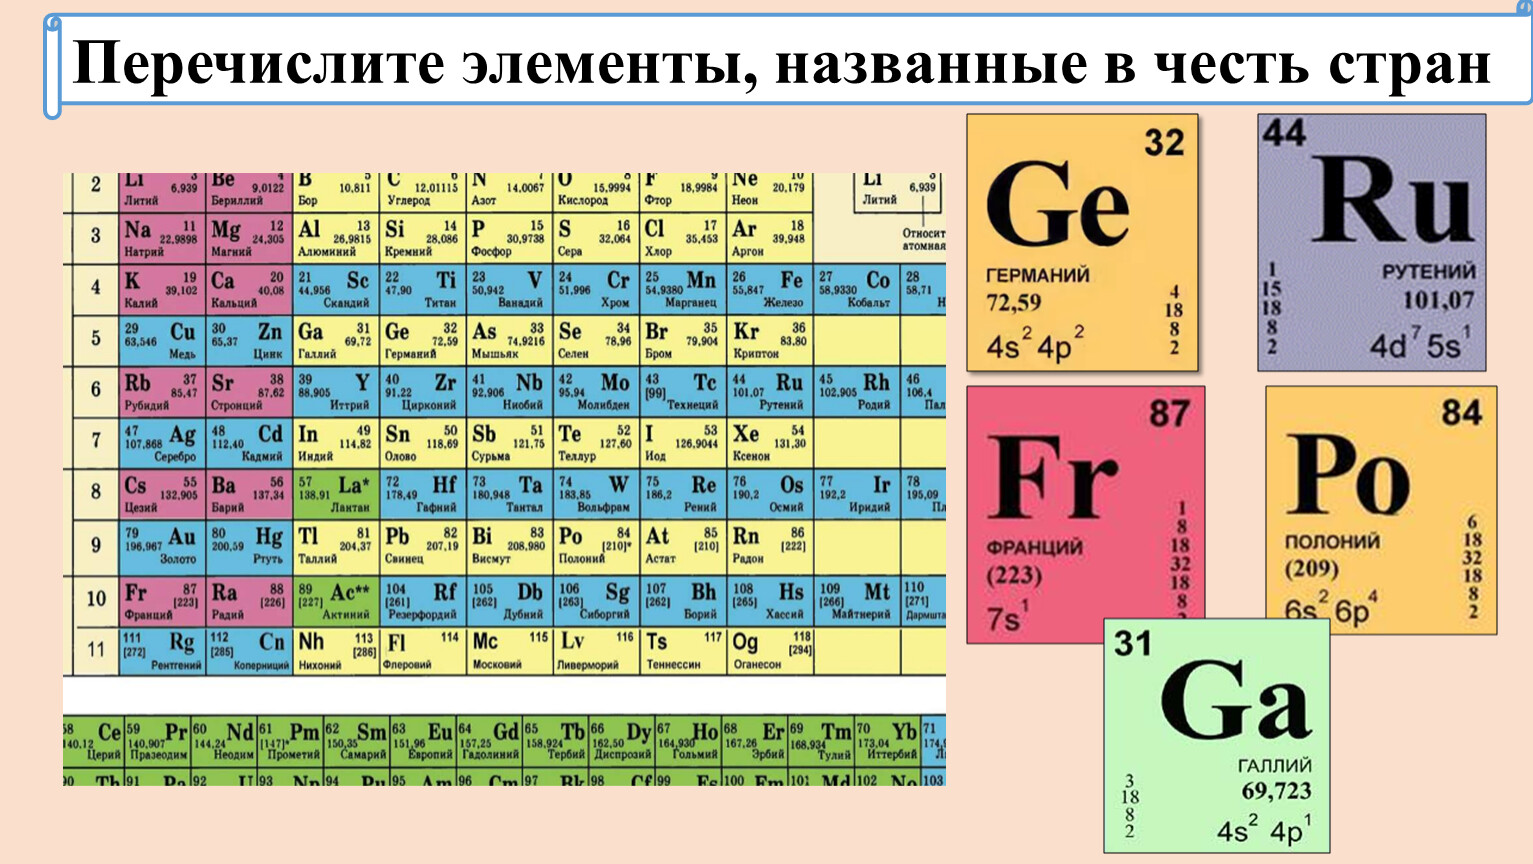 Названия элементов в честь. Таблица химических элементов Менделеева. 213 Элемент таблицы Менделеева. Элементы таблицы Менделеева названные в честь стран. V химический элемент.